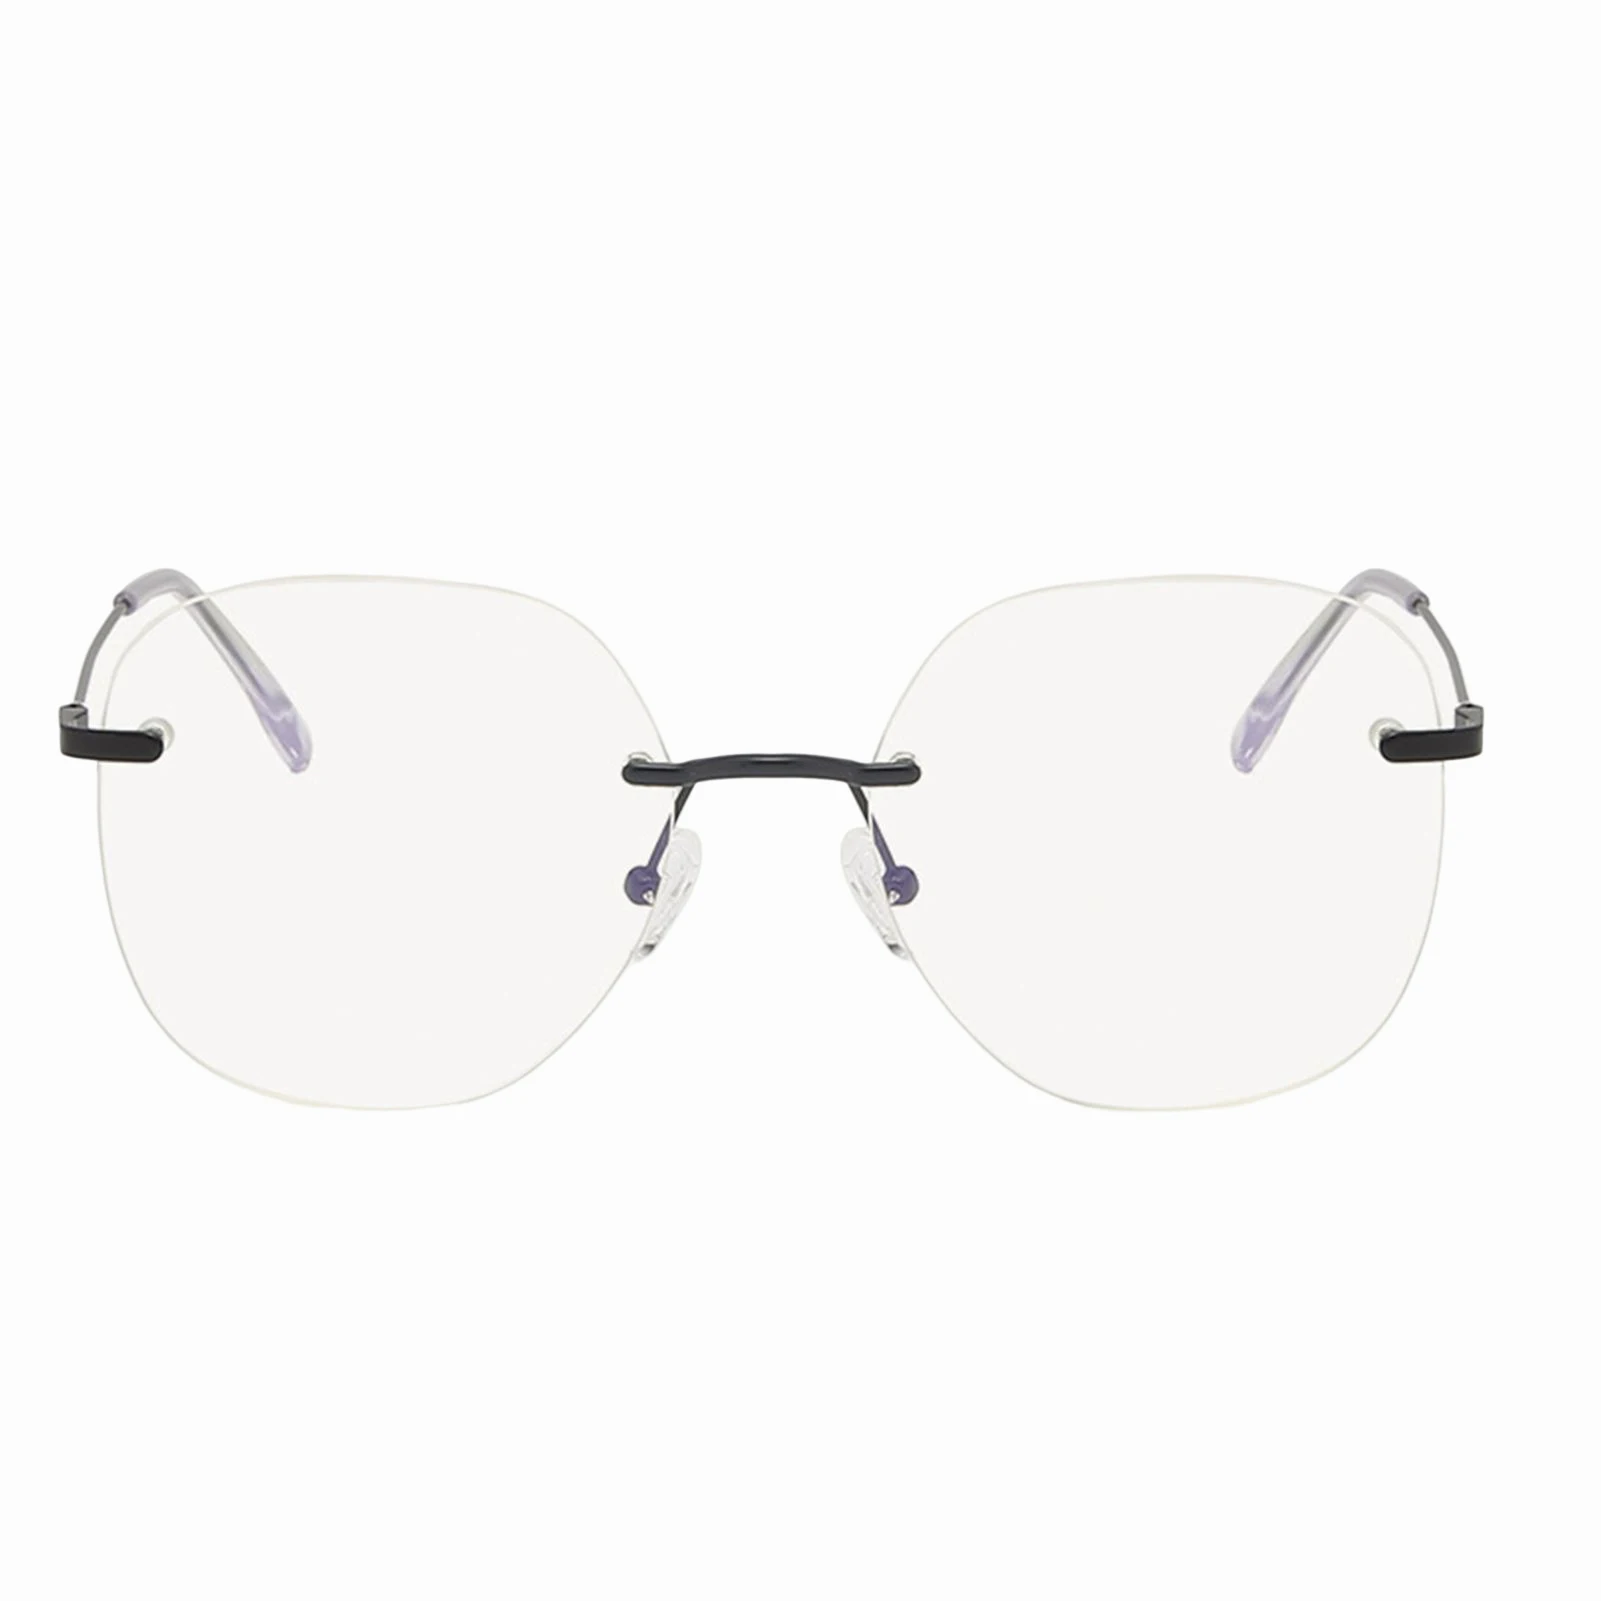 

Квадратные очки для близорукости стильные очки для студентов легкая прочная оправа для женщин модное украшение